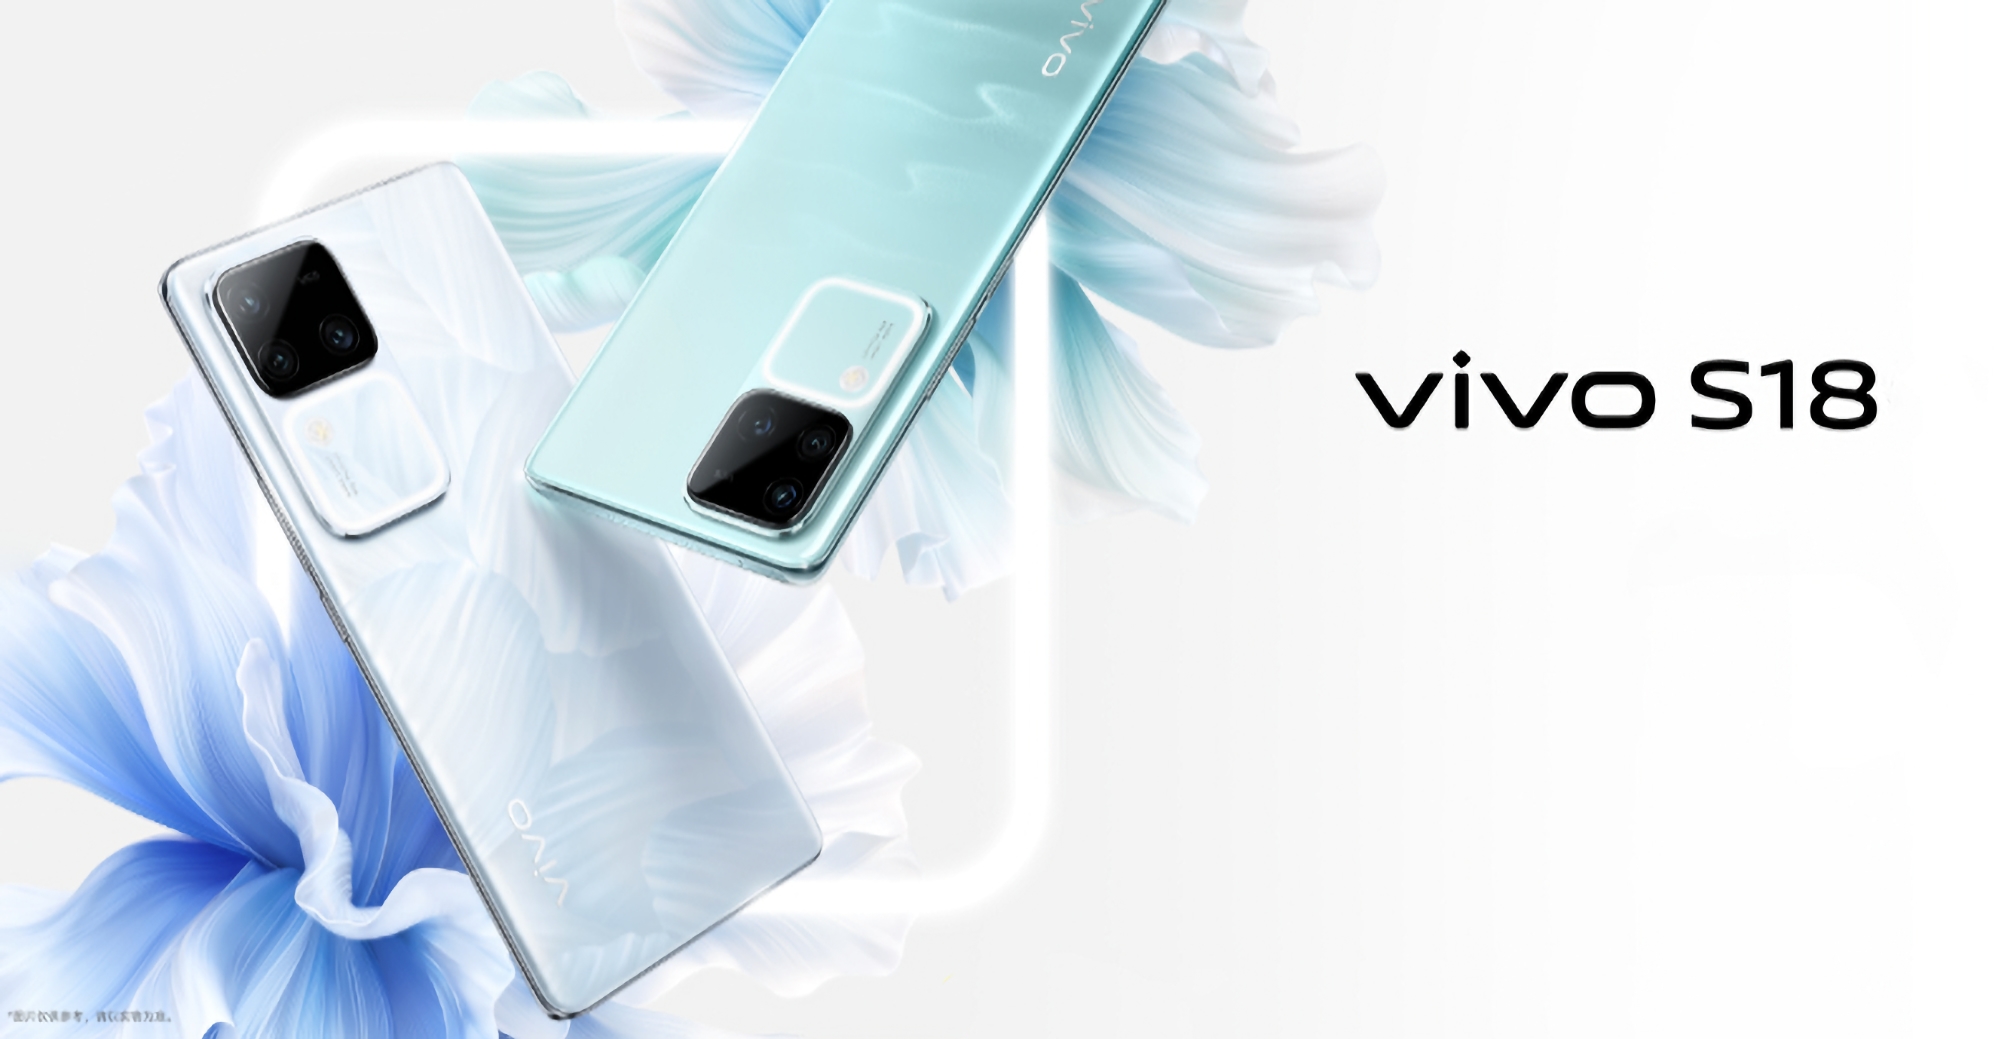 C'est officiel : les smartphones vivo S18 et vivo S18 Pro seront présentés le 14 décembre.